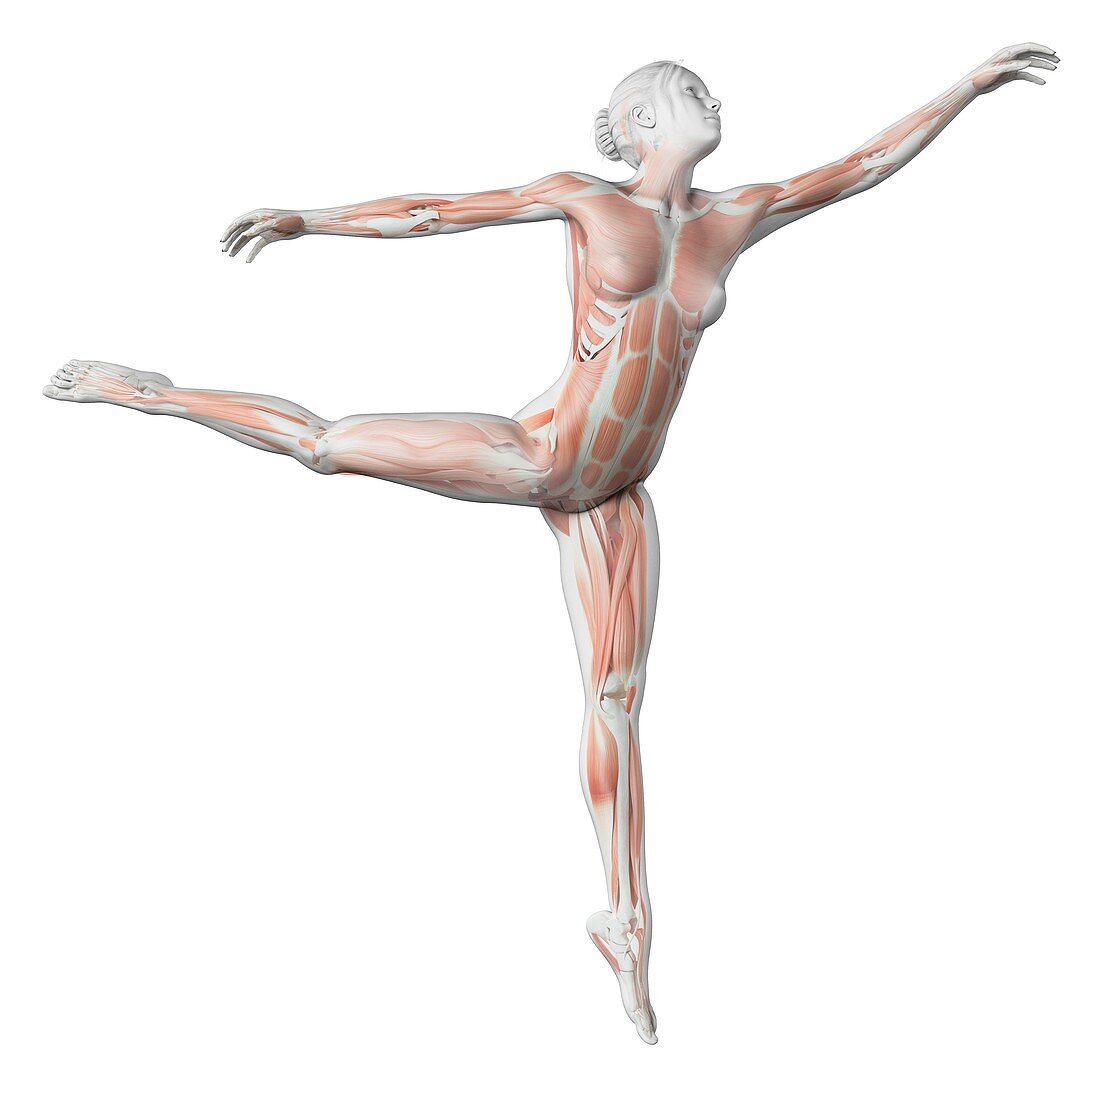 Female dancer,illustration